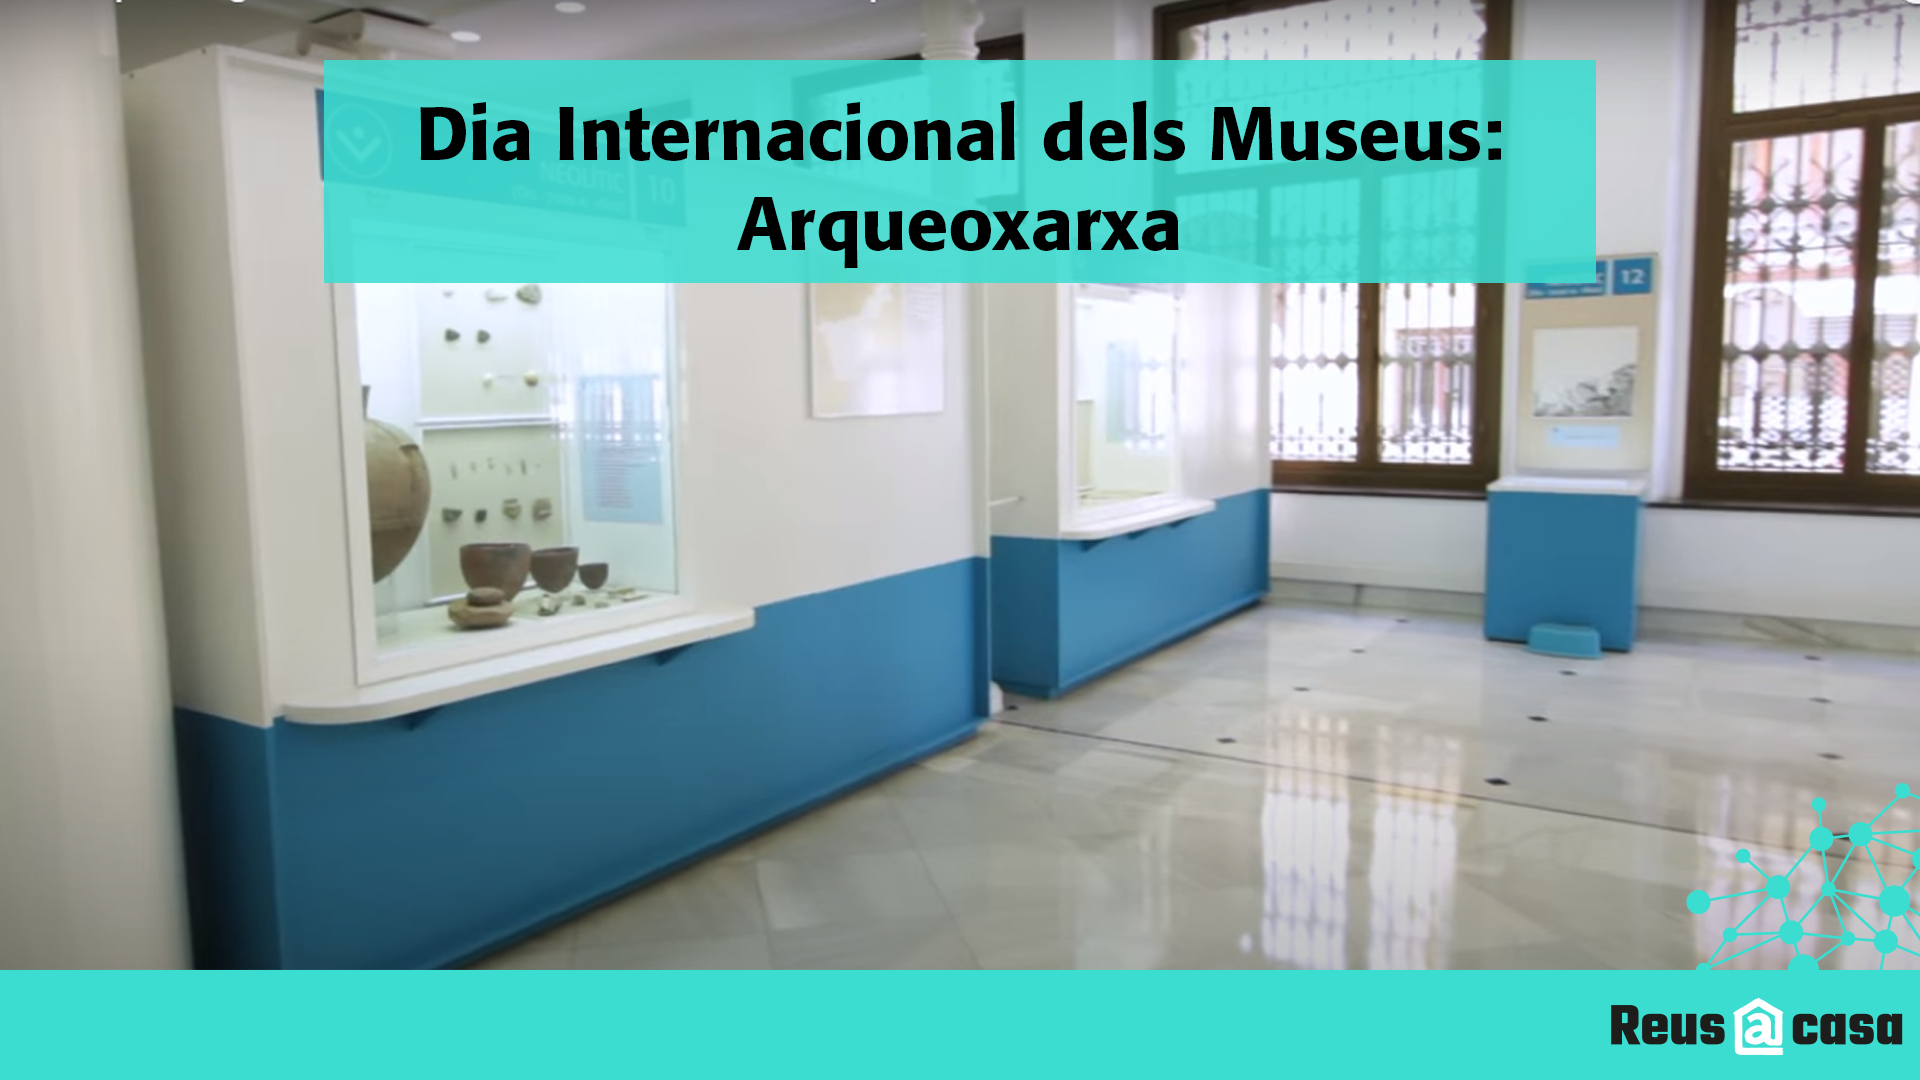 Dia Internacional dels Museus: Arqueoxarxa